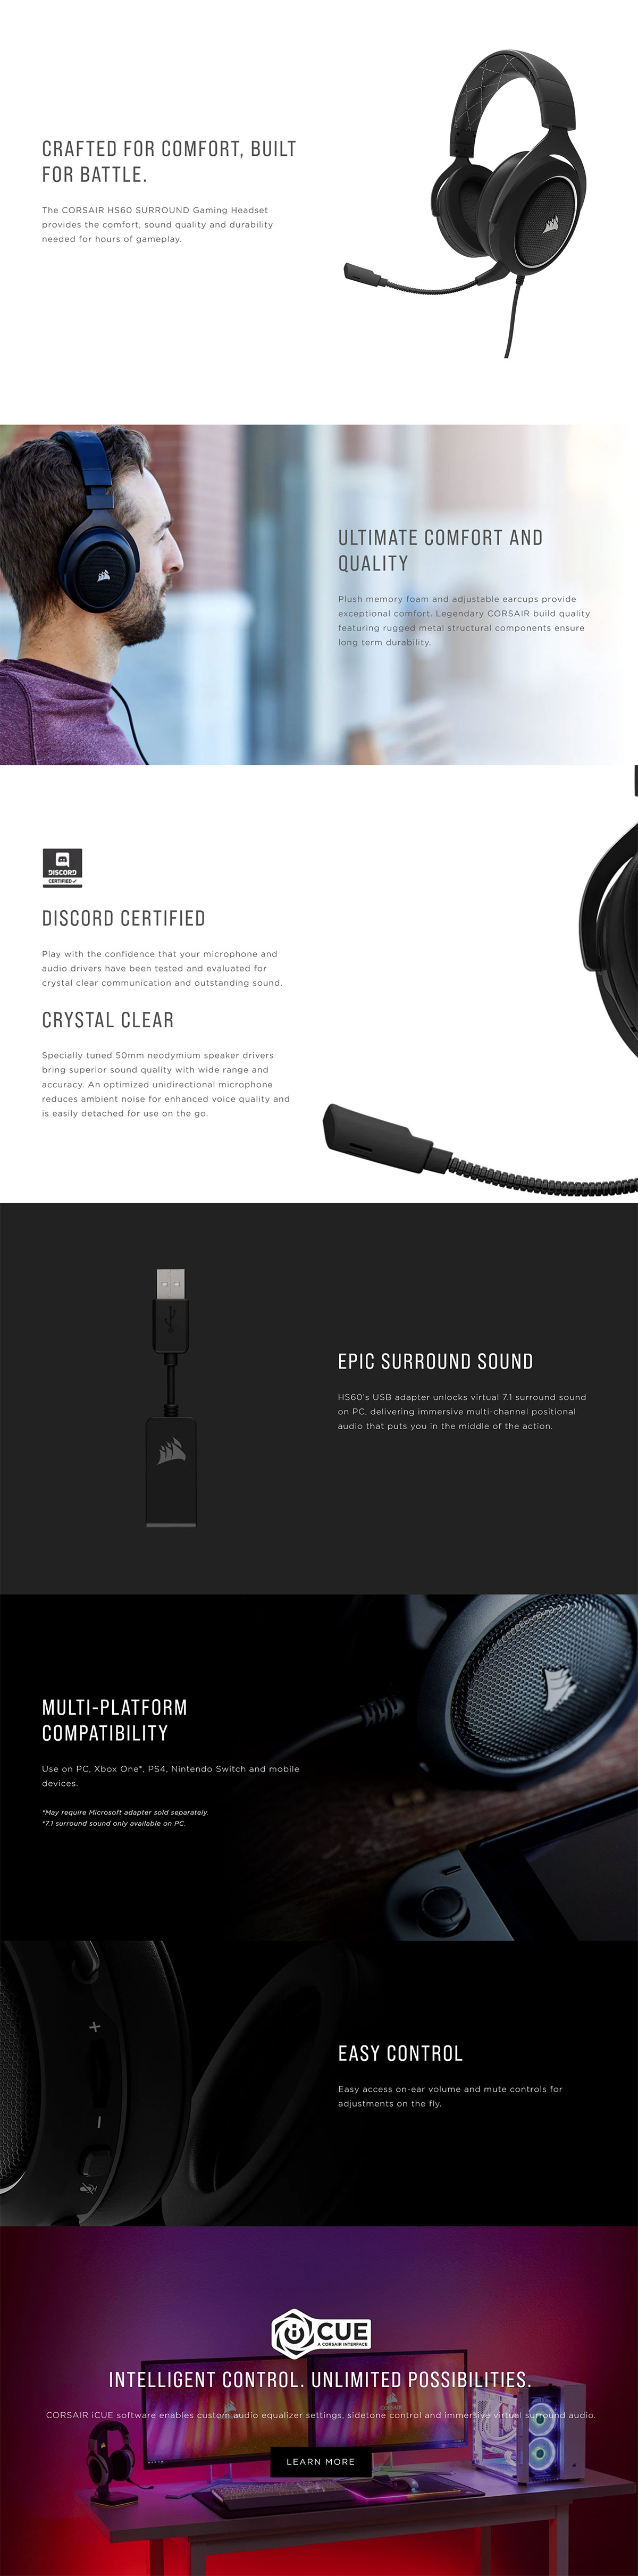 CORSAIR HS60 Surround Sound Gaming Headset Carbon Black CA-9011173-AP Details